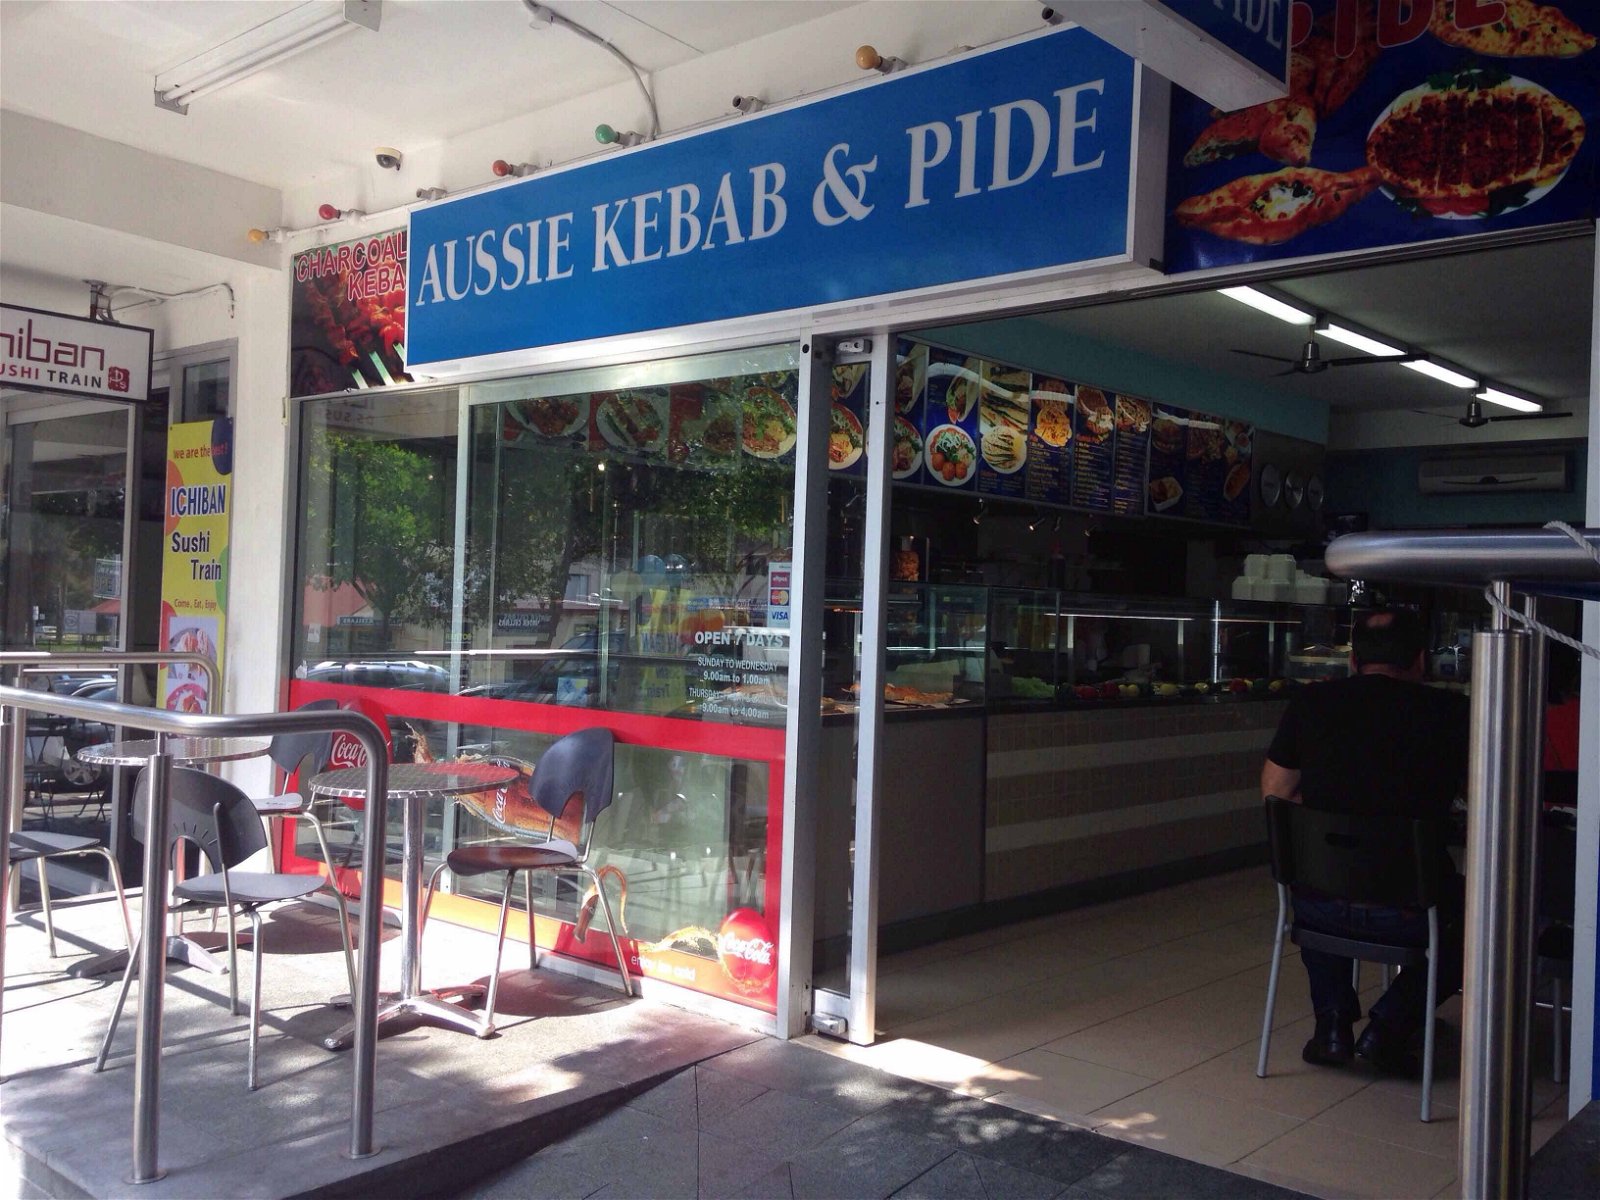 Aussie Kebab  Pide - Great Ocean Road Tourism